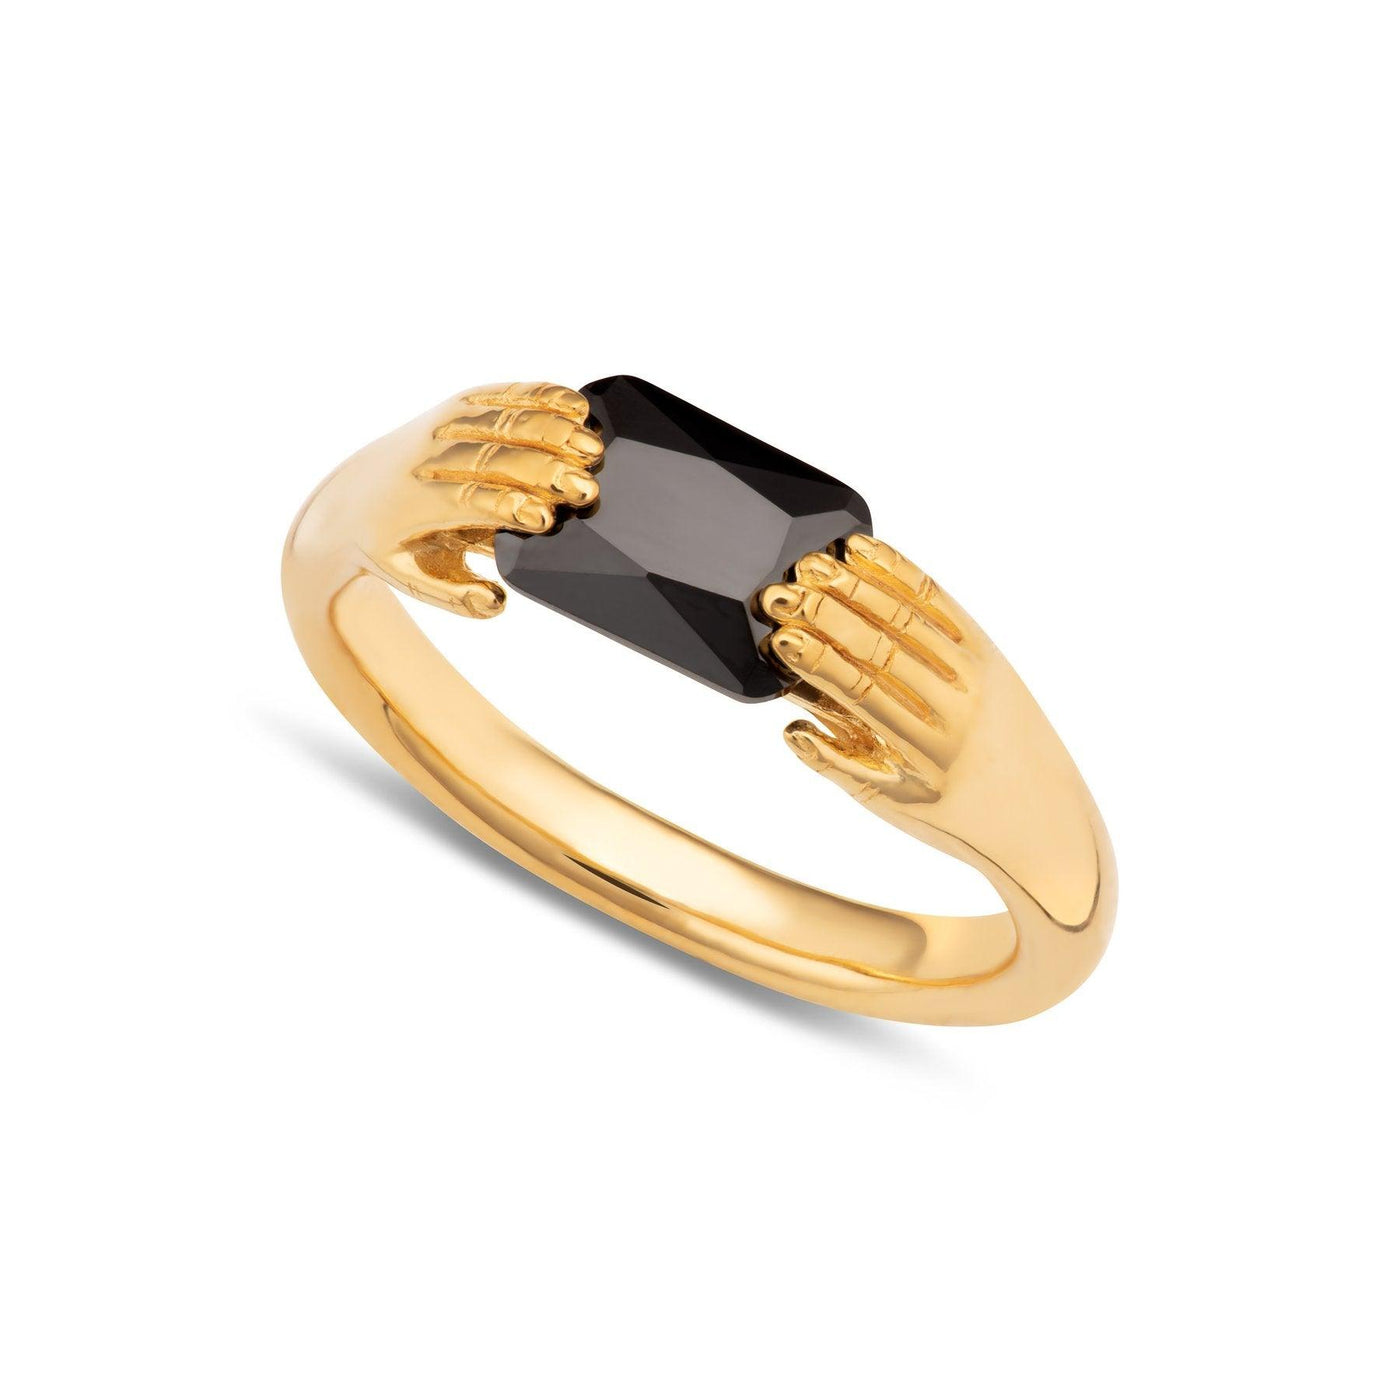 Scream Pretty Fede Ring with Black Stone - Rococo Jewellery